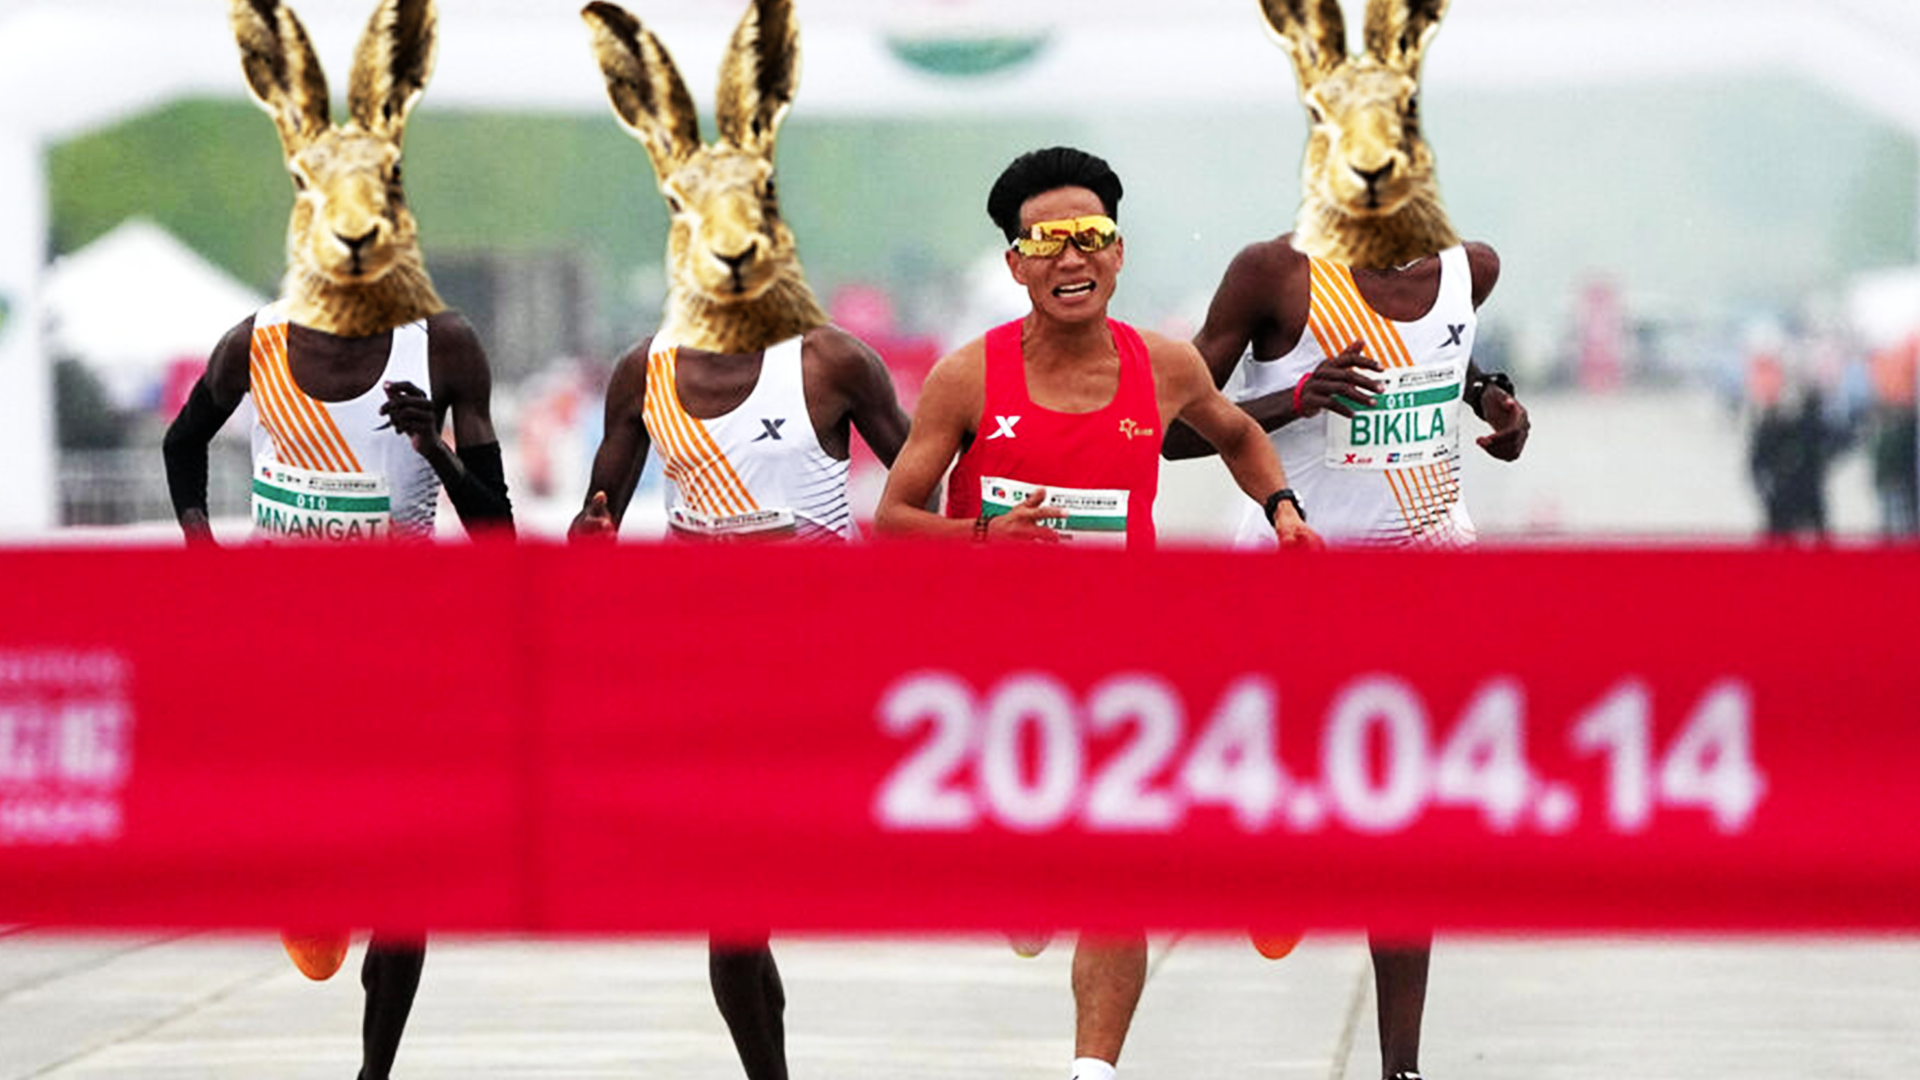 Les organisateurs du semi-marathon de Pékin ont annoncé vendredi la disqualification des quatre premiers de l'épreuve, après la victoire controversée dimanche d'un coureur chinois ayant bénéficié de l'aide indue de trois autres concurrents.